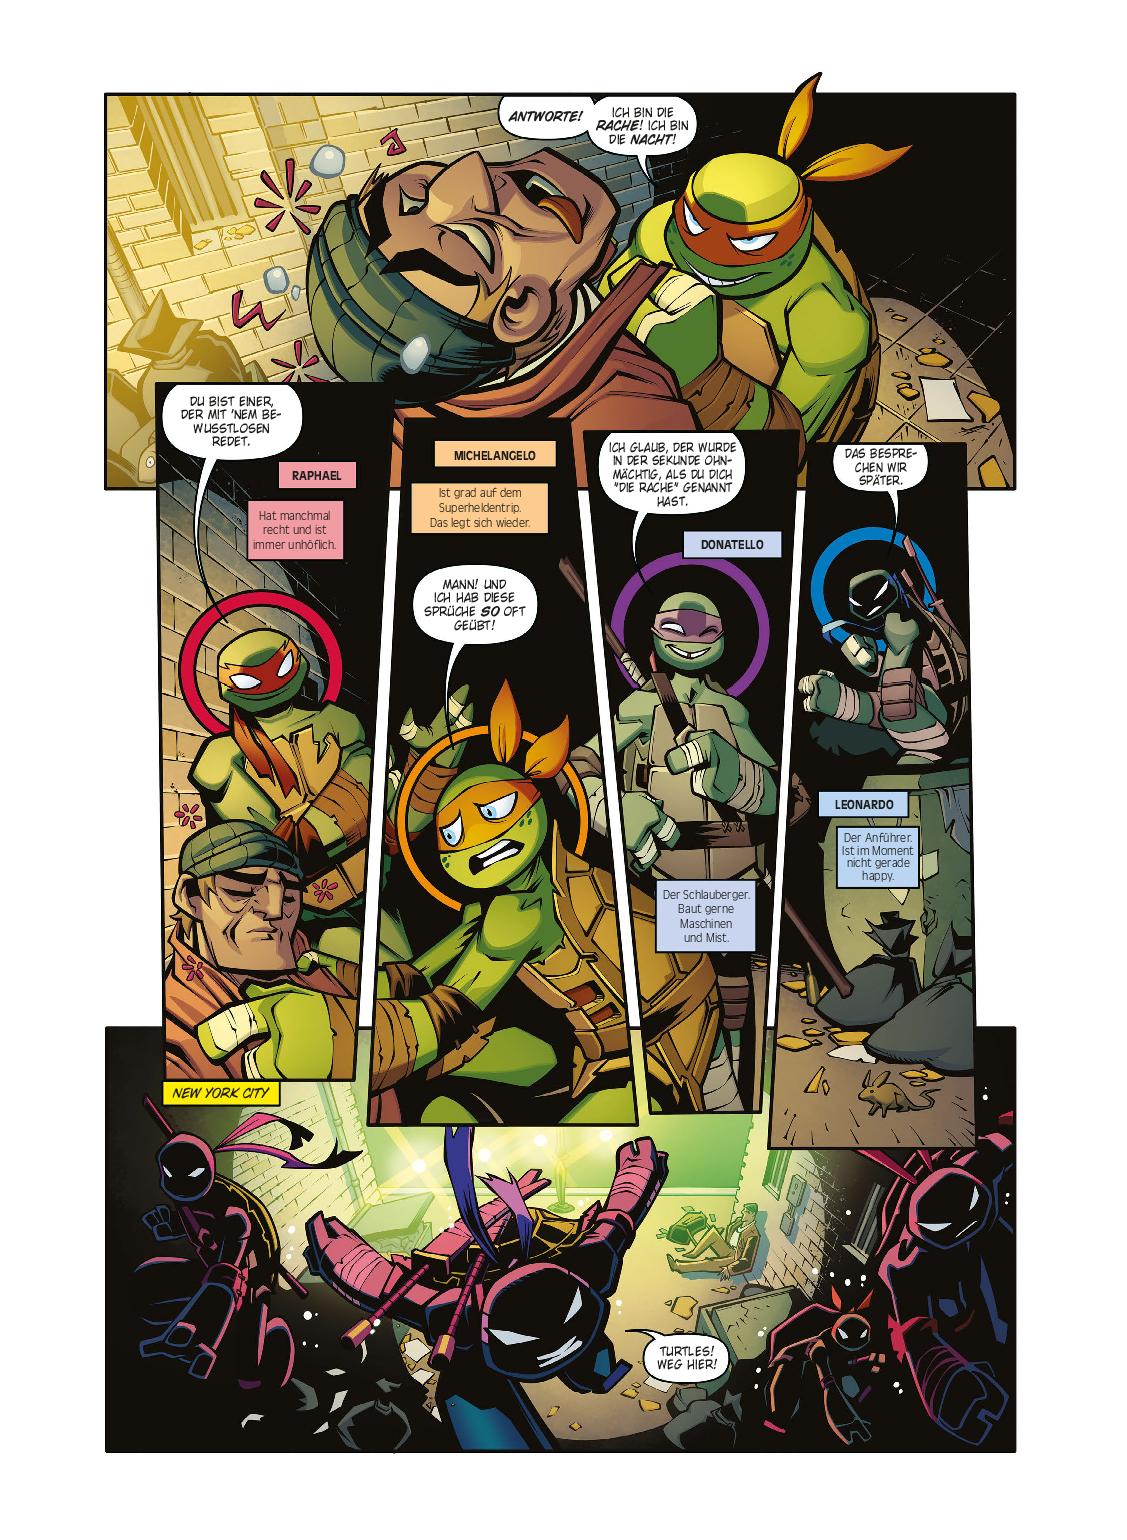 DC-Comic | BATMAN/TEENAGE MUTANT NINJA TURTLES ADVENTURES | Panini-Verlag | Details aus dem Inhalt